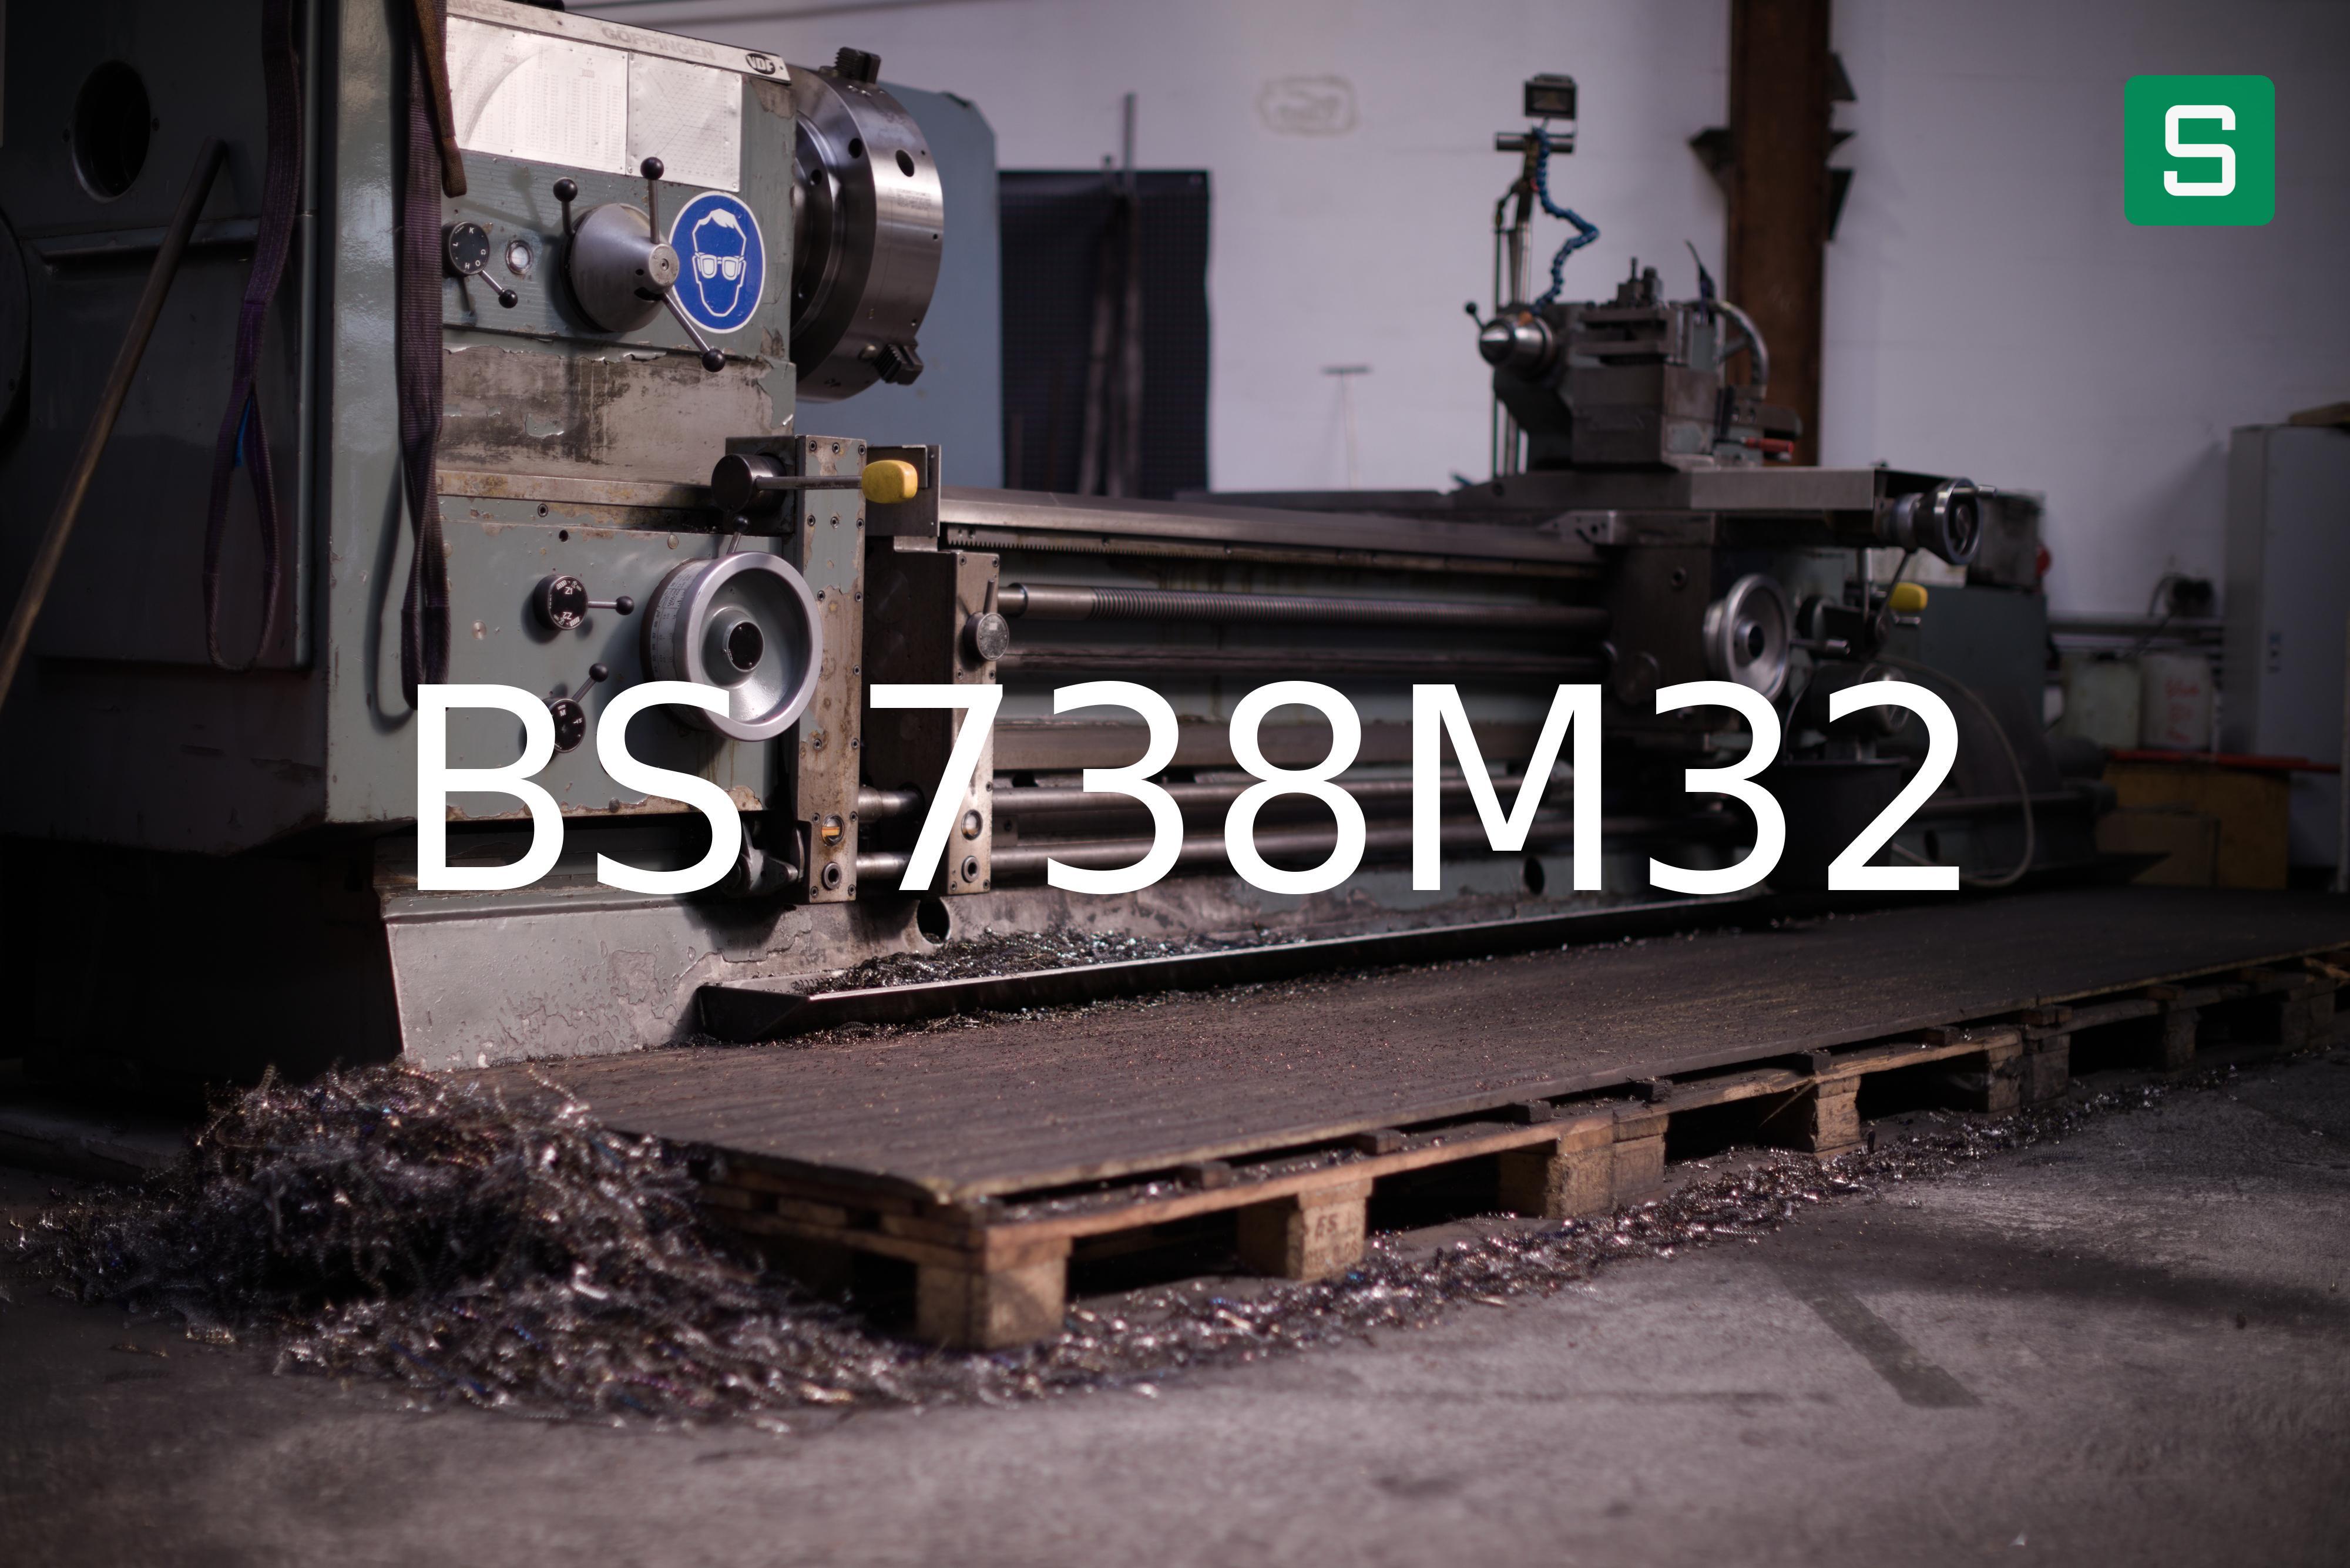 Steel Material: BS 738M32